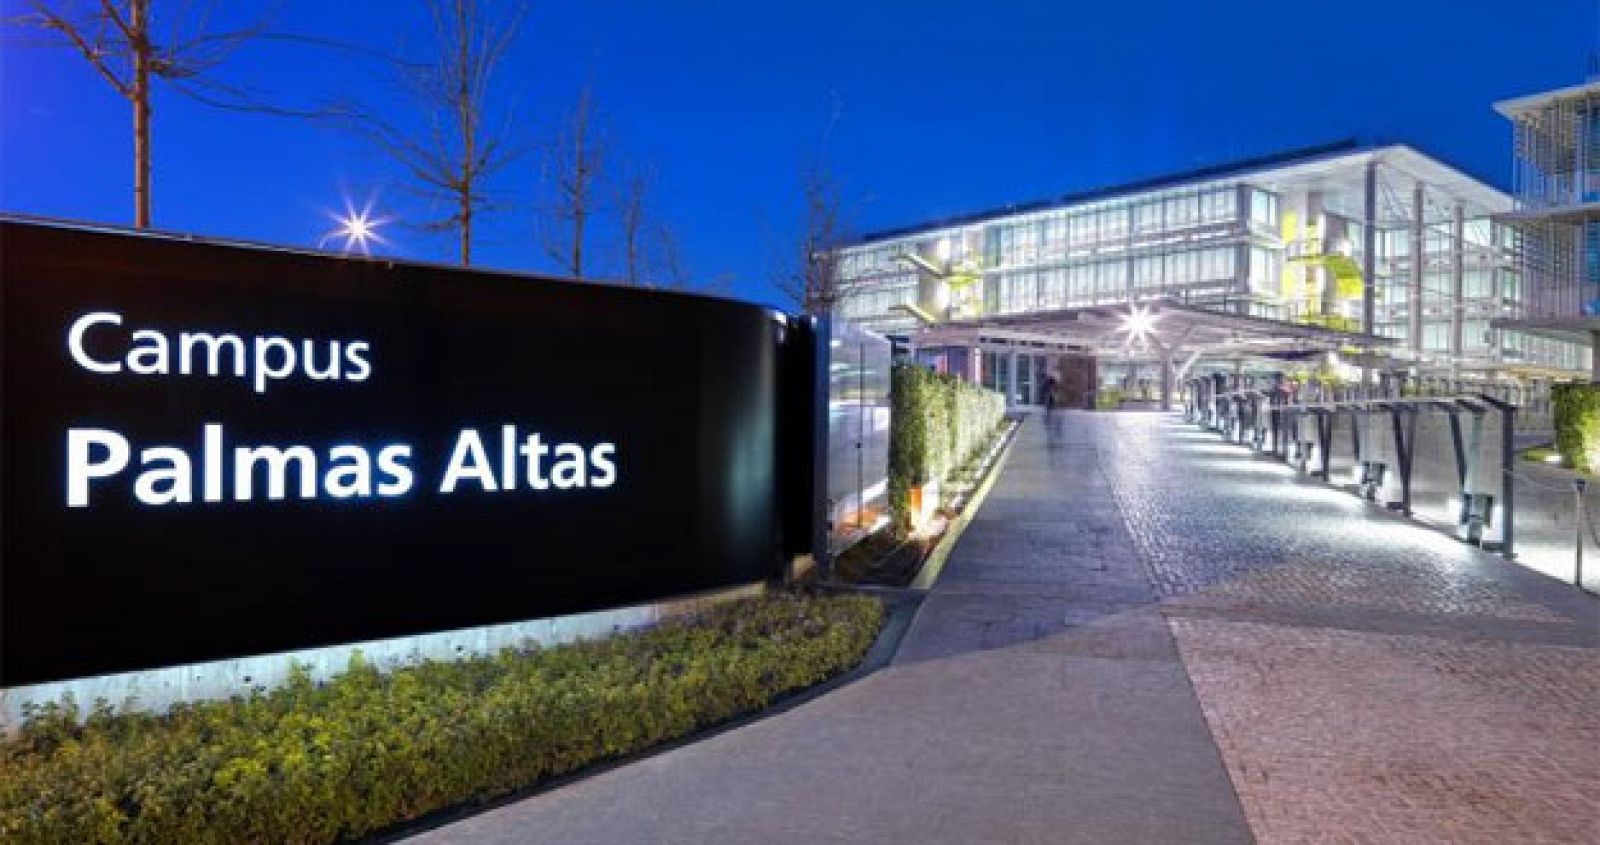 Campus Palmas Altas, sede de Abengoa, en calle Energía Solar en Sevilla, España